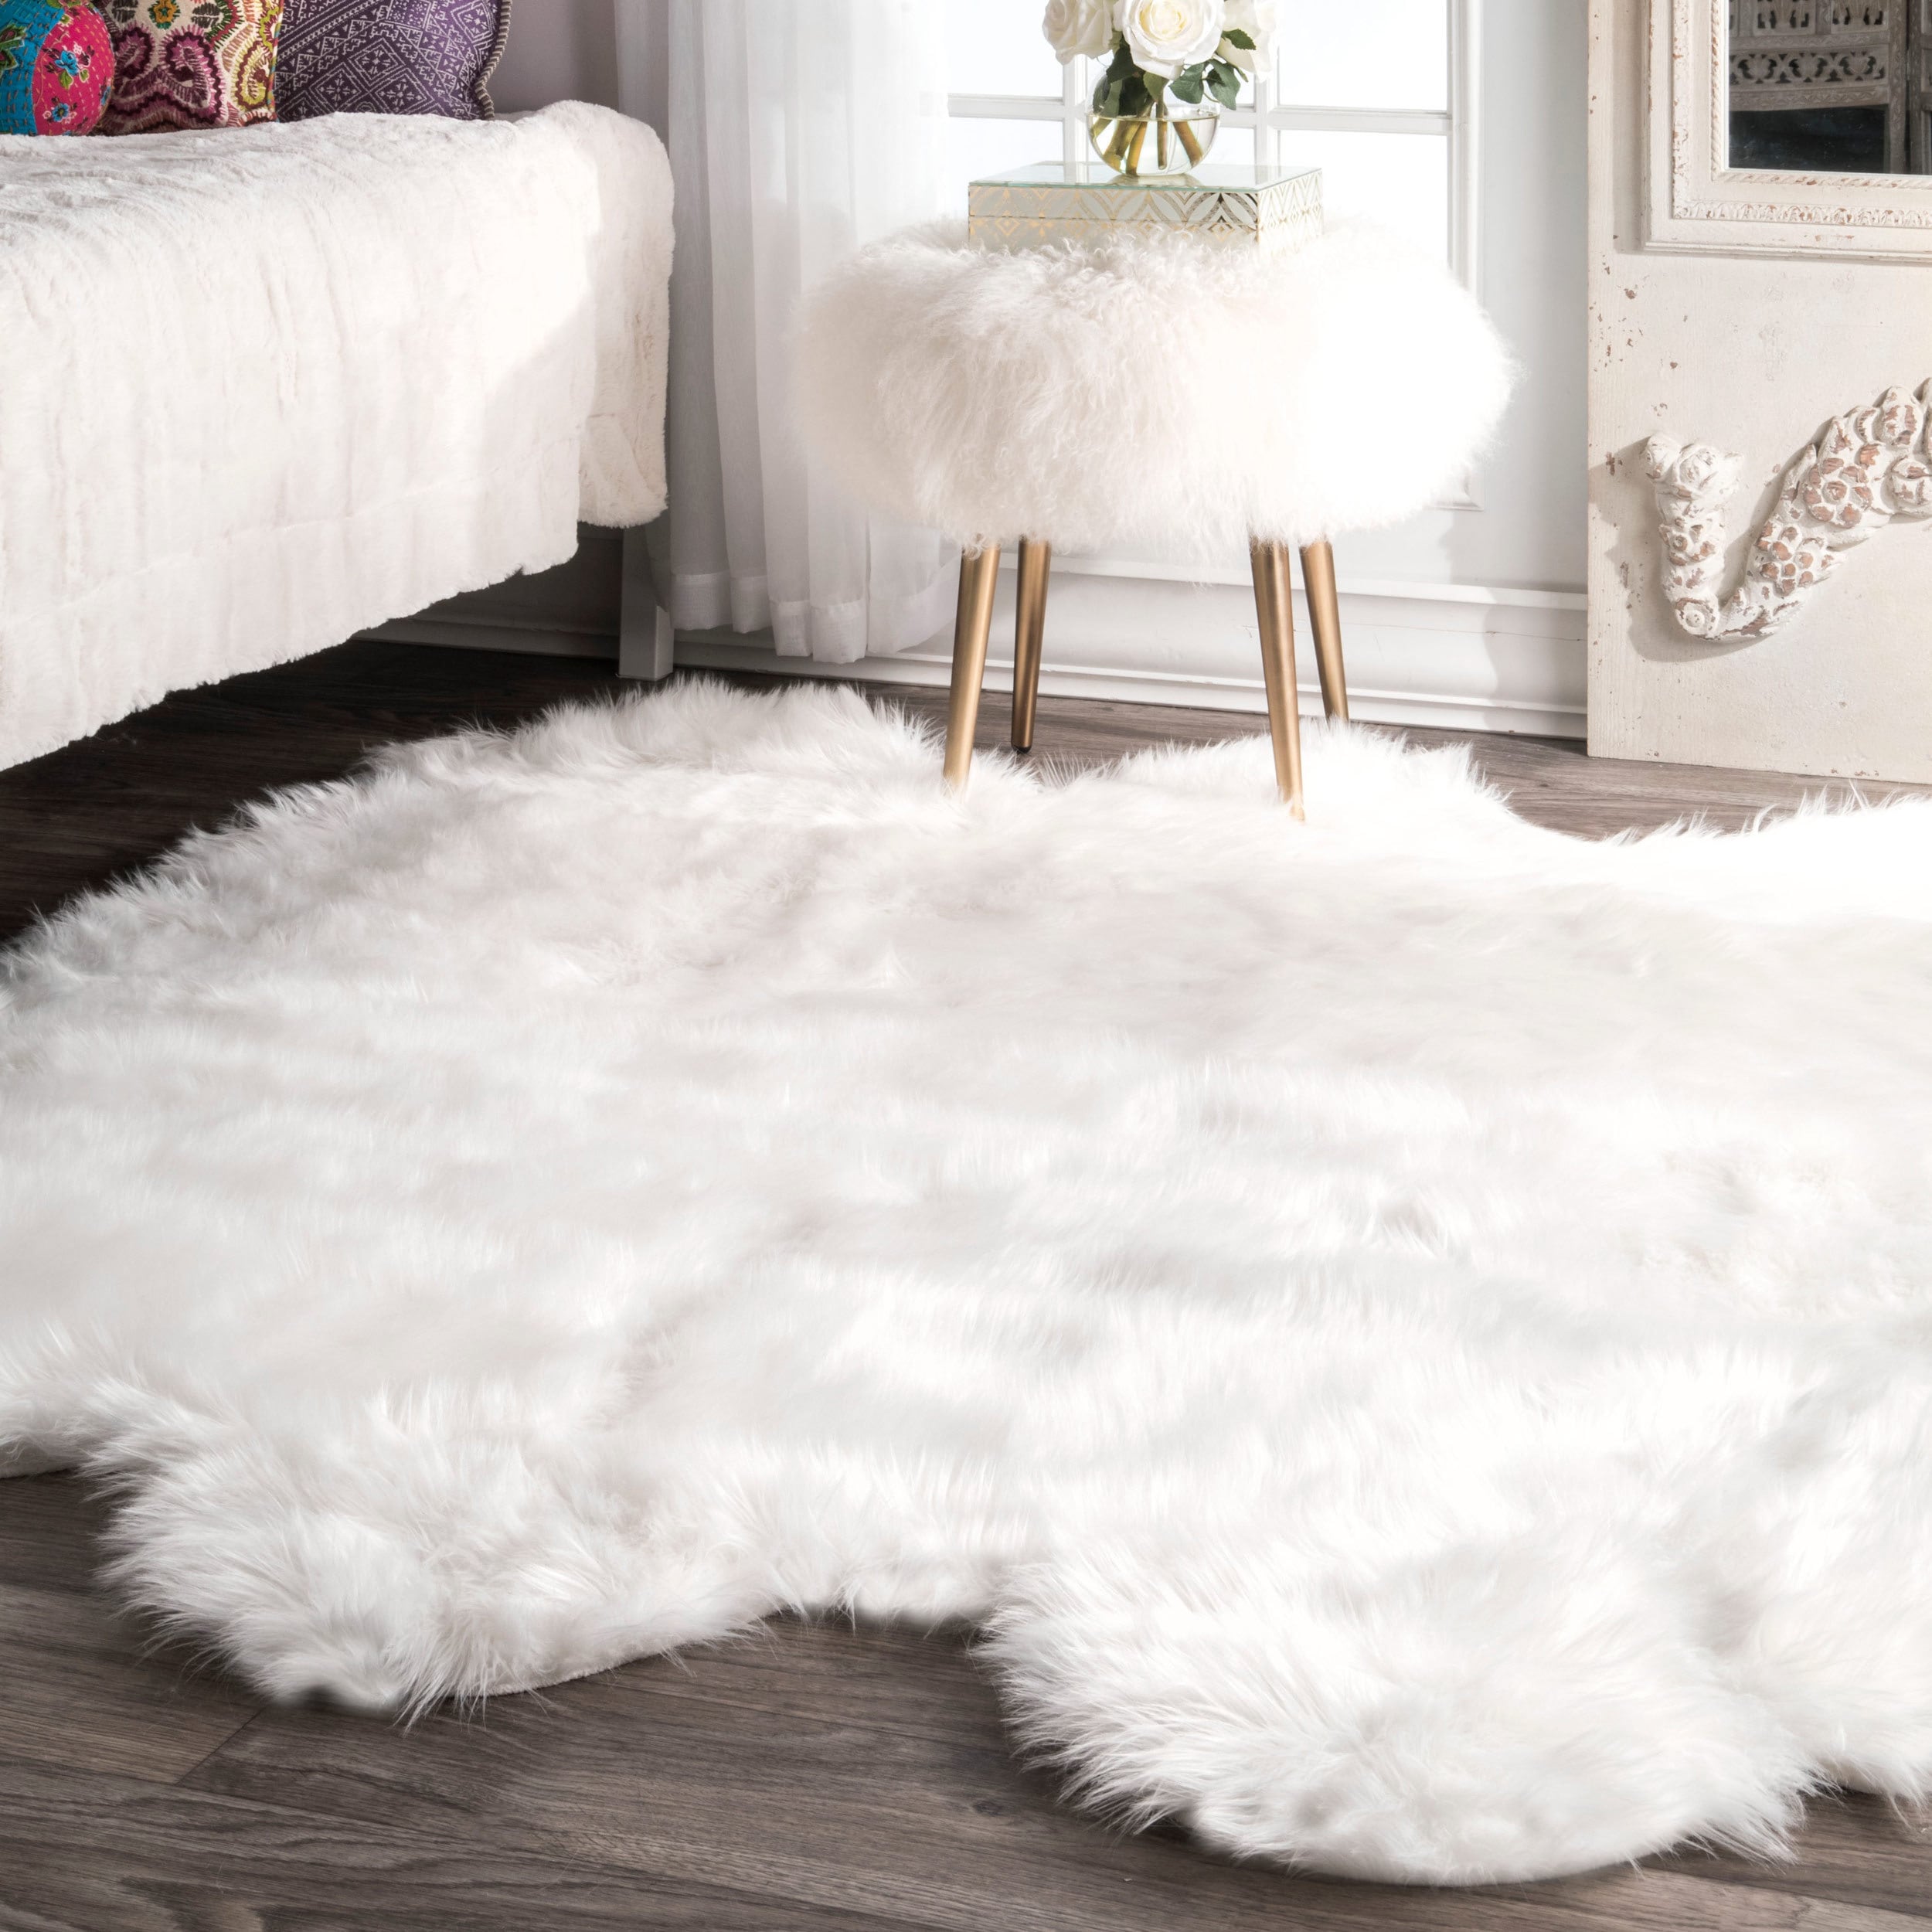 white fluffy mold on carpet